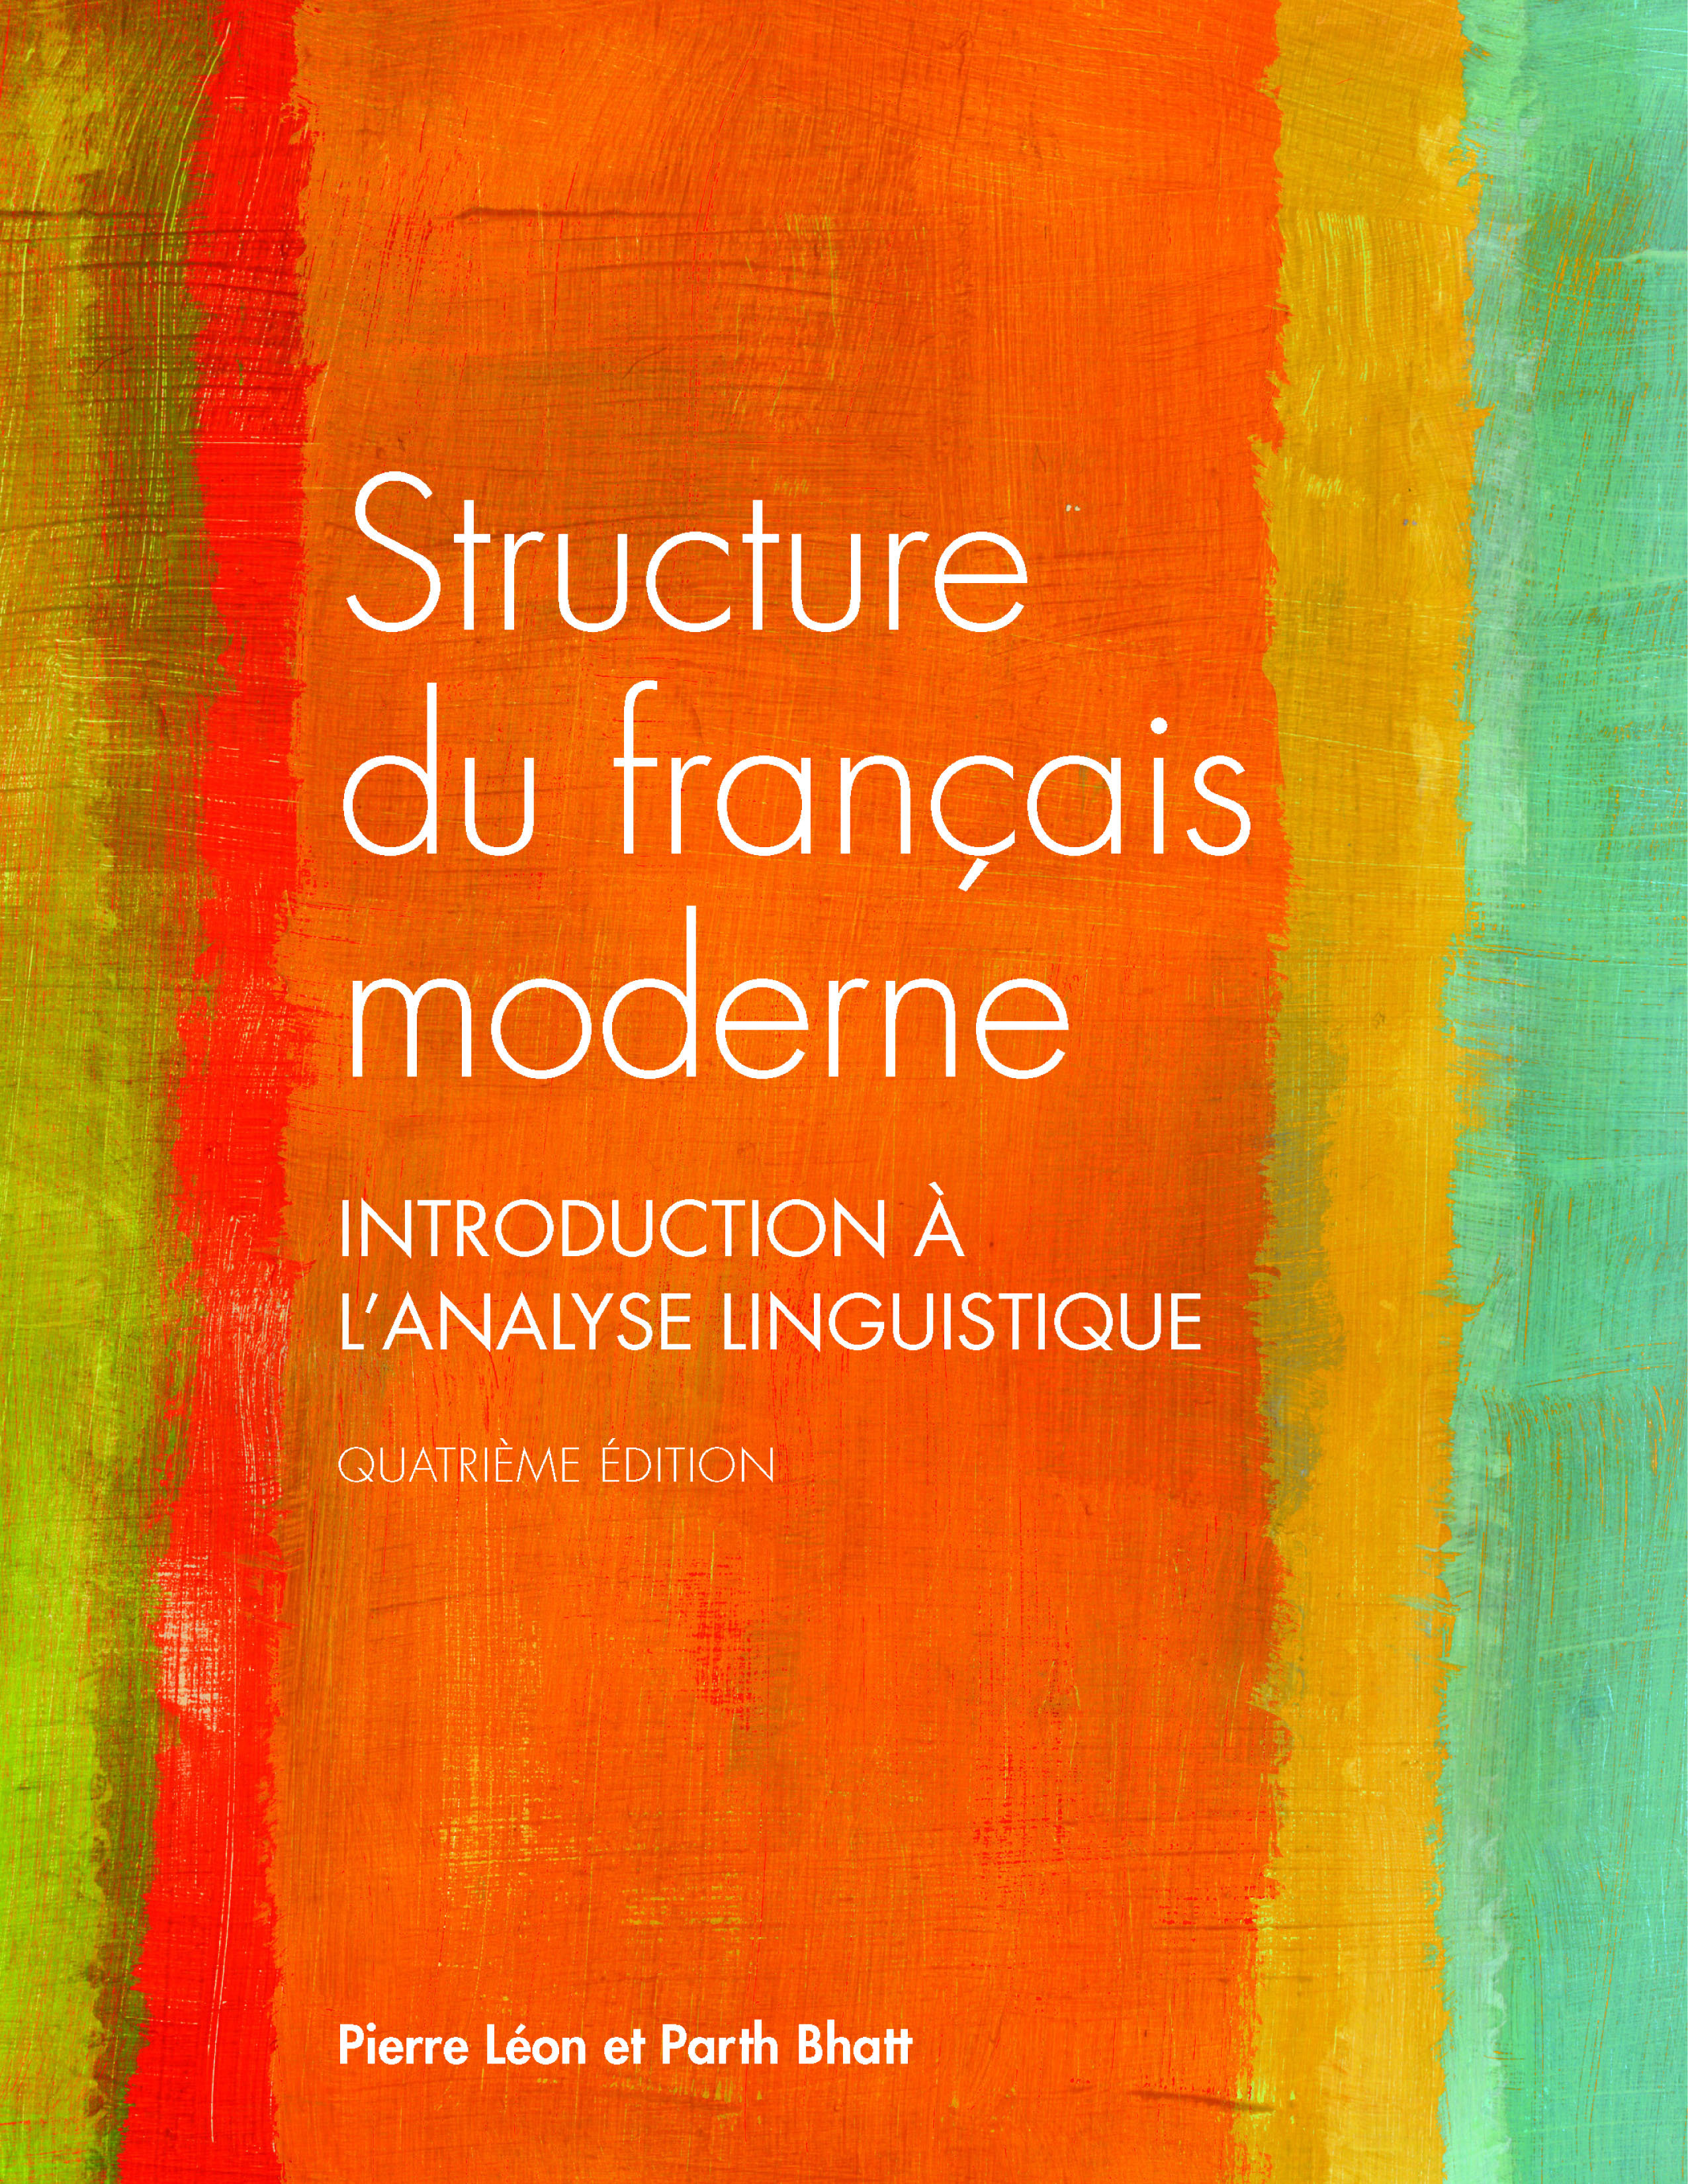 français　Structure　quatrième　Scholars　édition　Canadian　du　moderne,